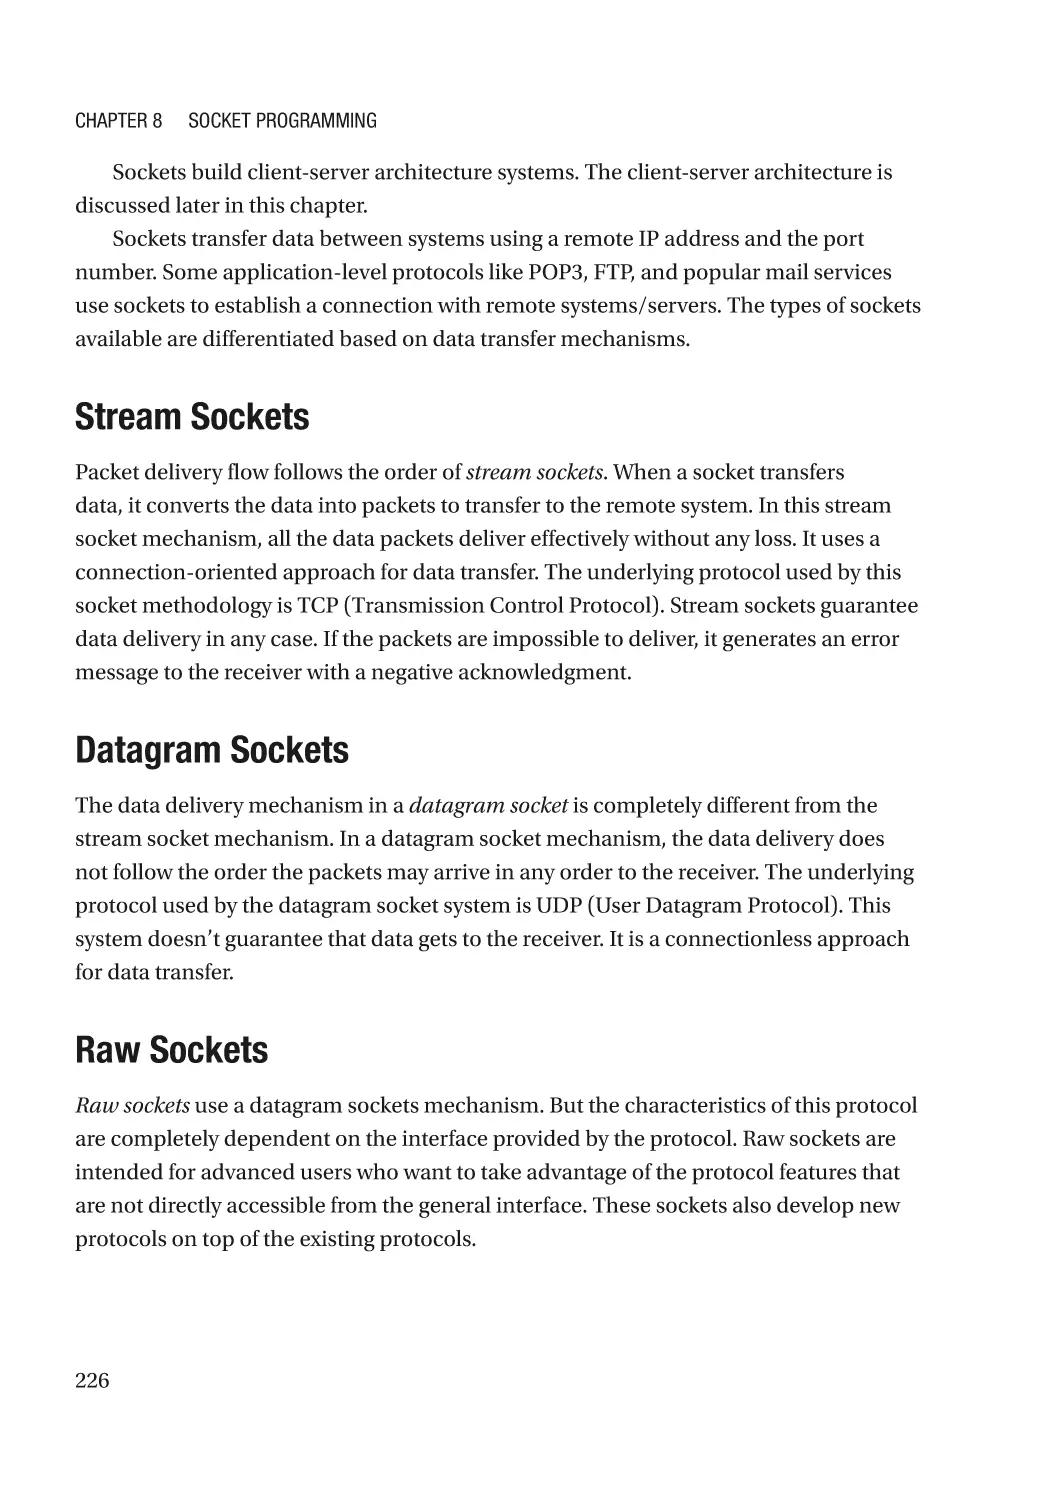 Stream Sockets
Datagram Sockets
Raw Sockets